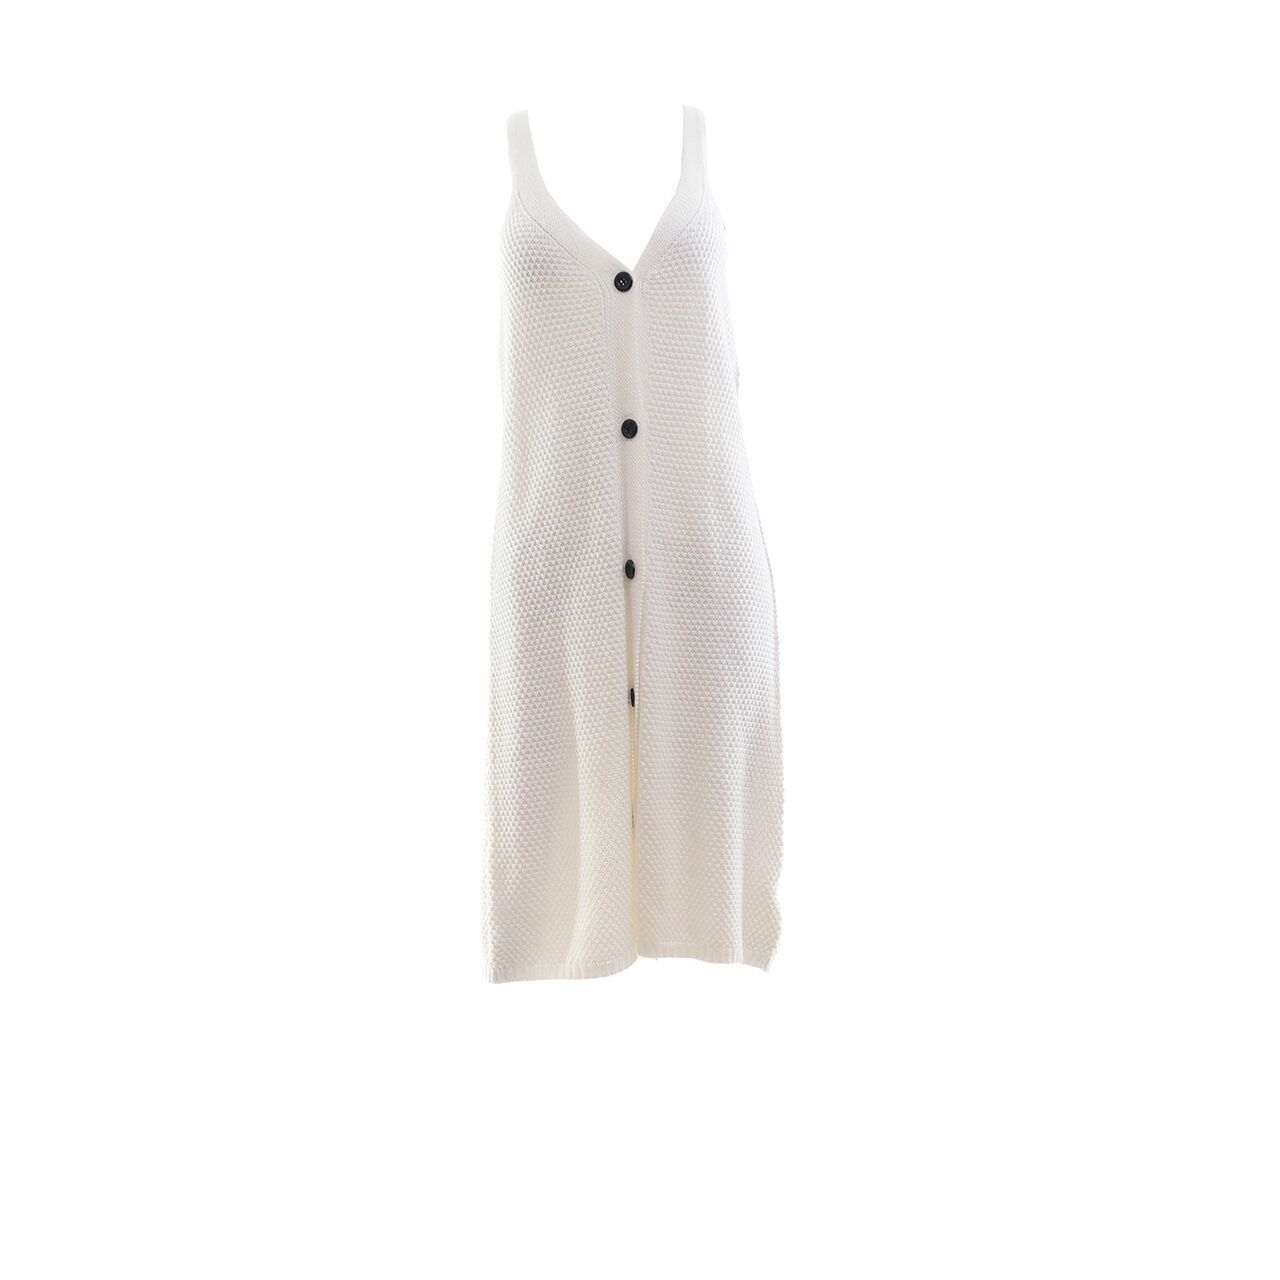 Zaful Off White Knit Mini Dress